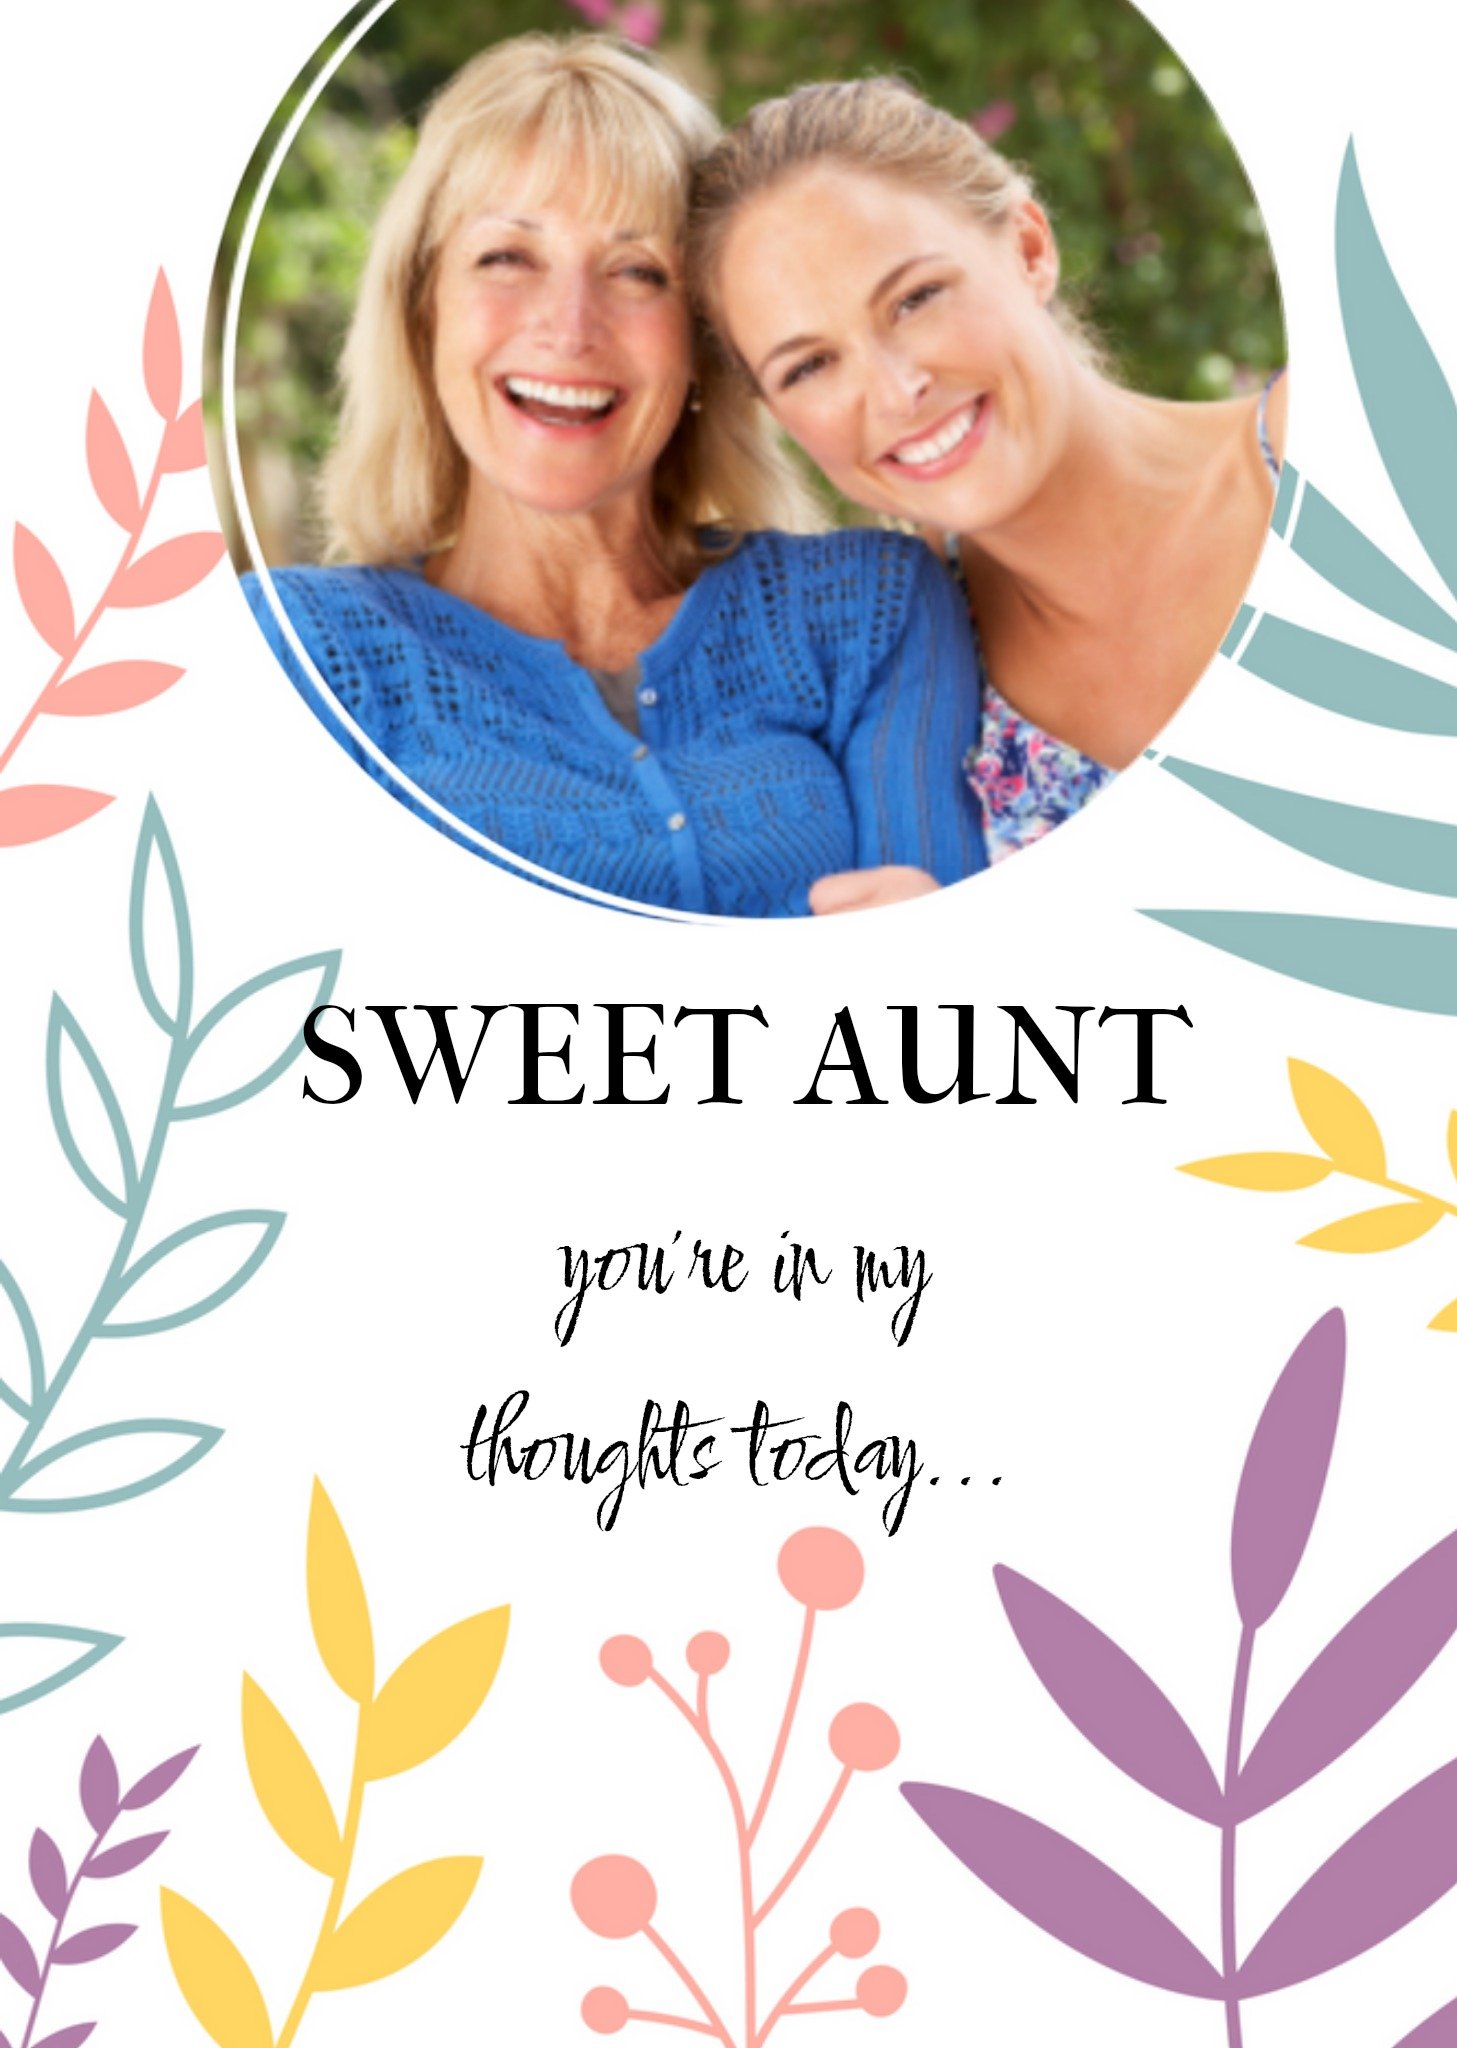 Denken aan - Sweet aunt